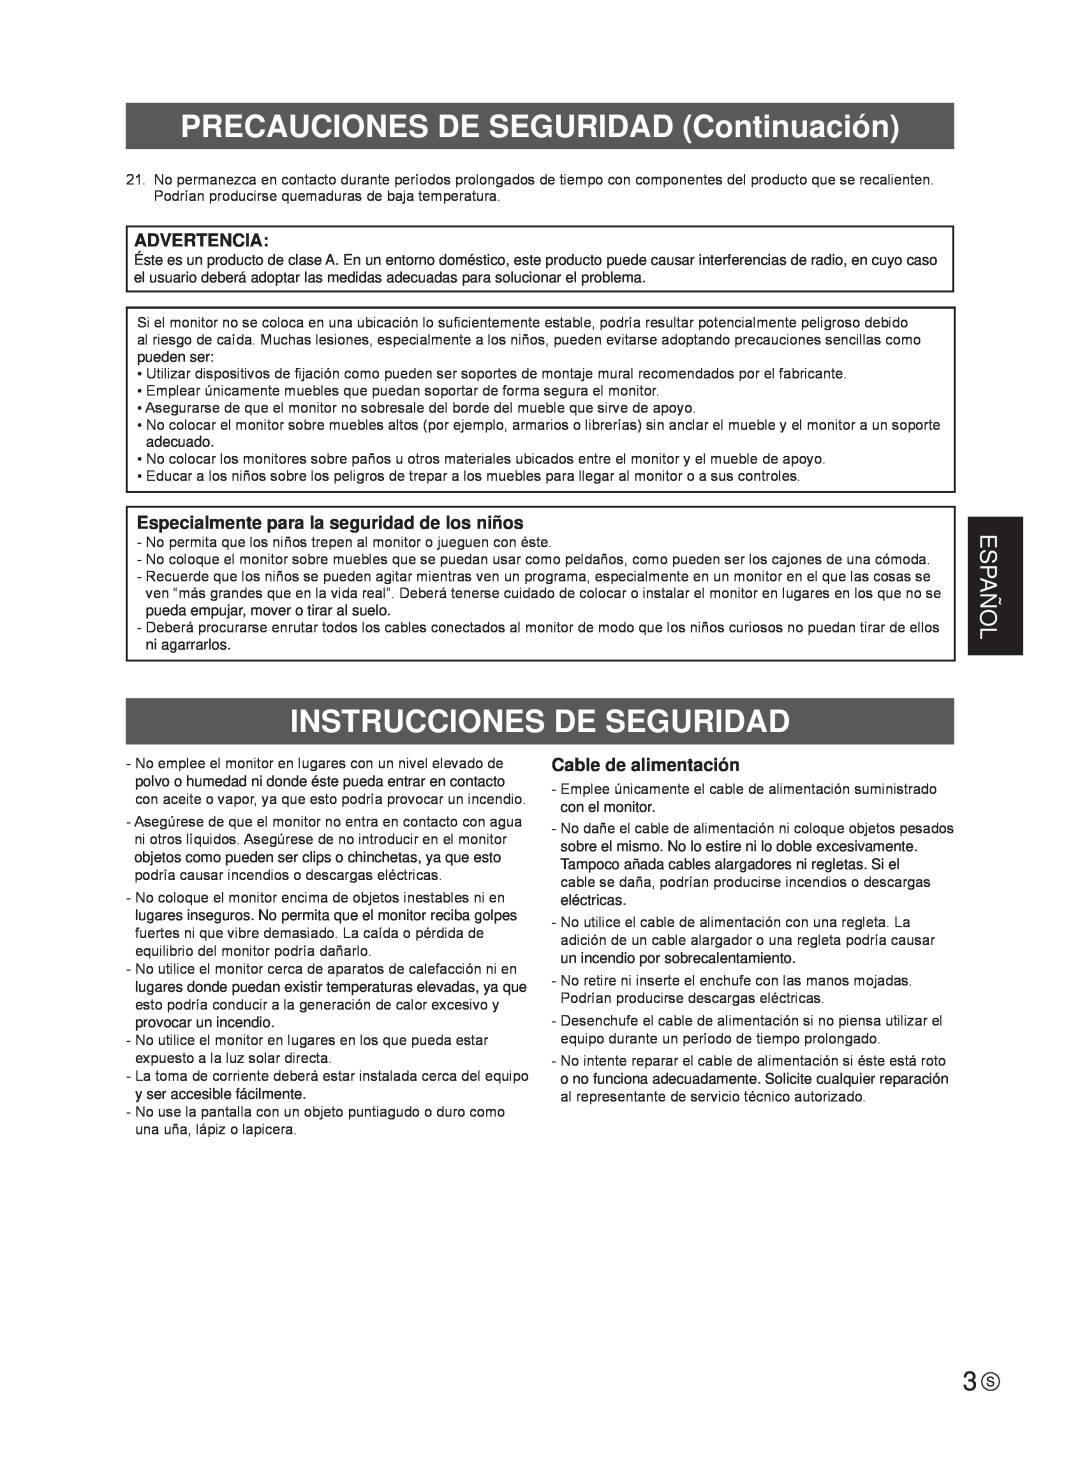 Sharp TINSE1181MPZZ(2) PRECAUCIONES DE SEGURIDAD Continuación, Instrucciones De Seguridad, Español, Cable de alimentación 